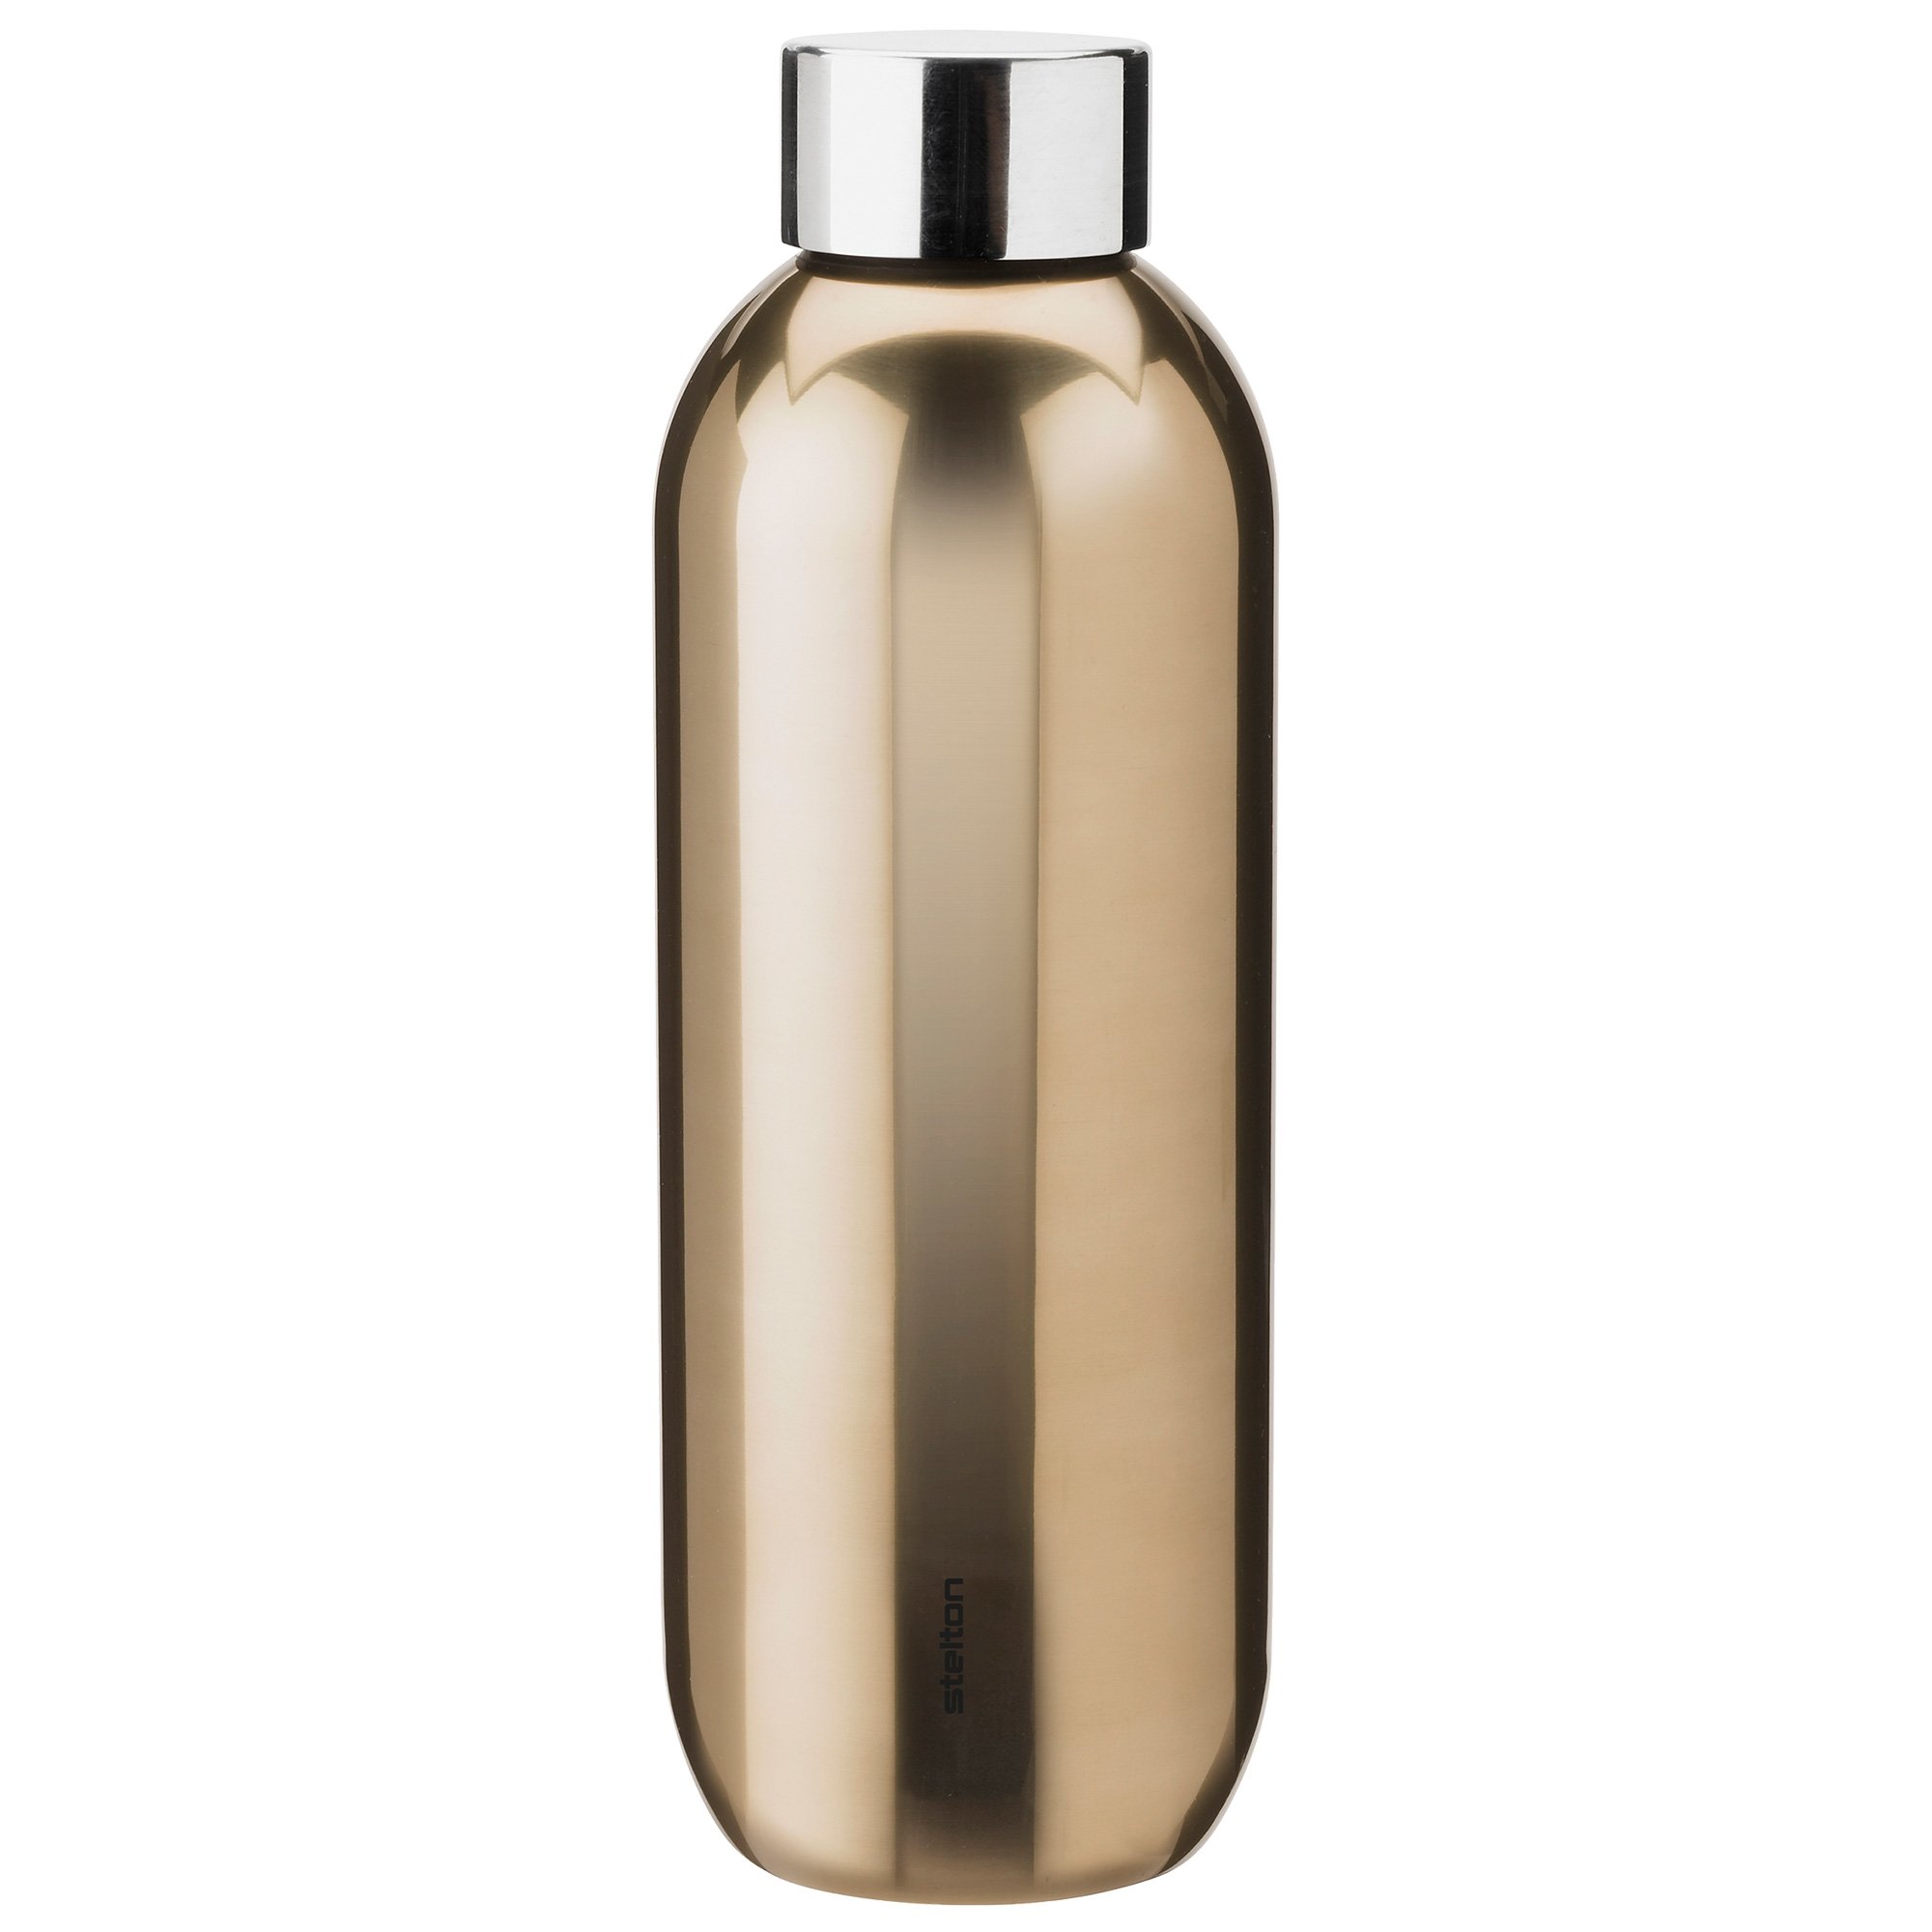 5: Stelton Keep Cool Drikkeflaske 0,6 liter, dark gold